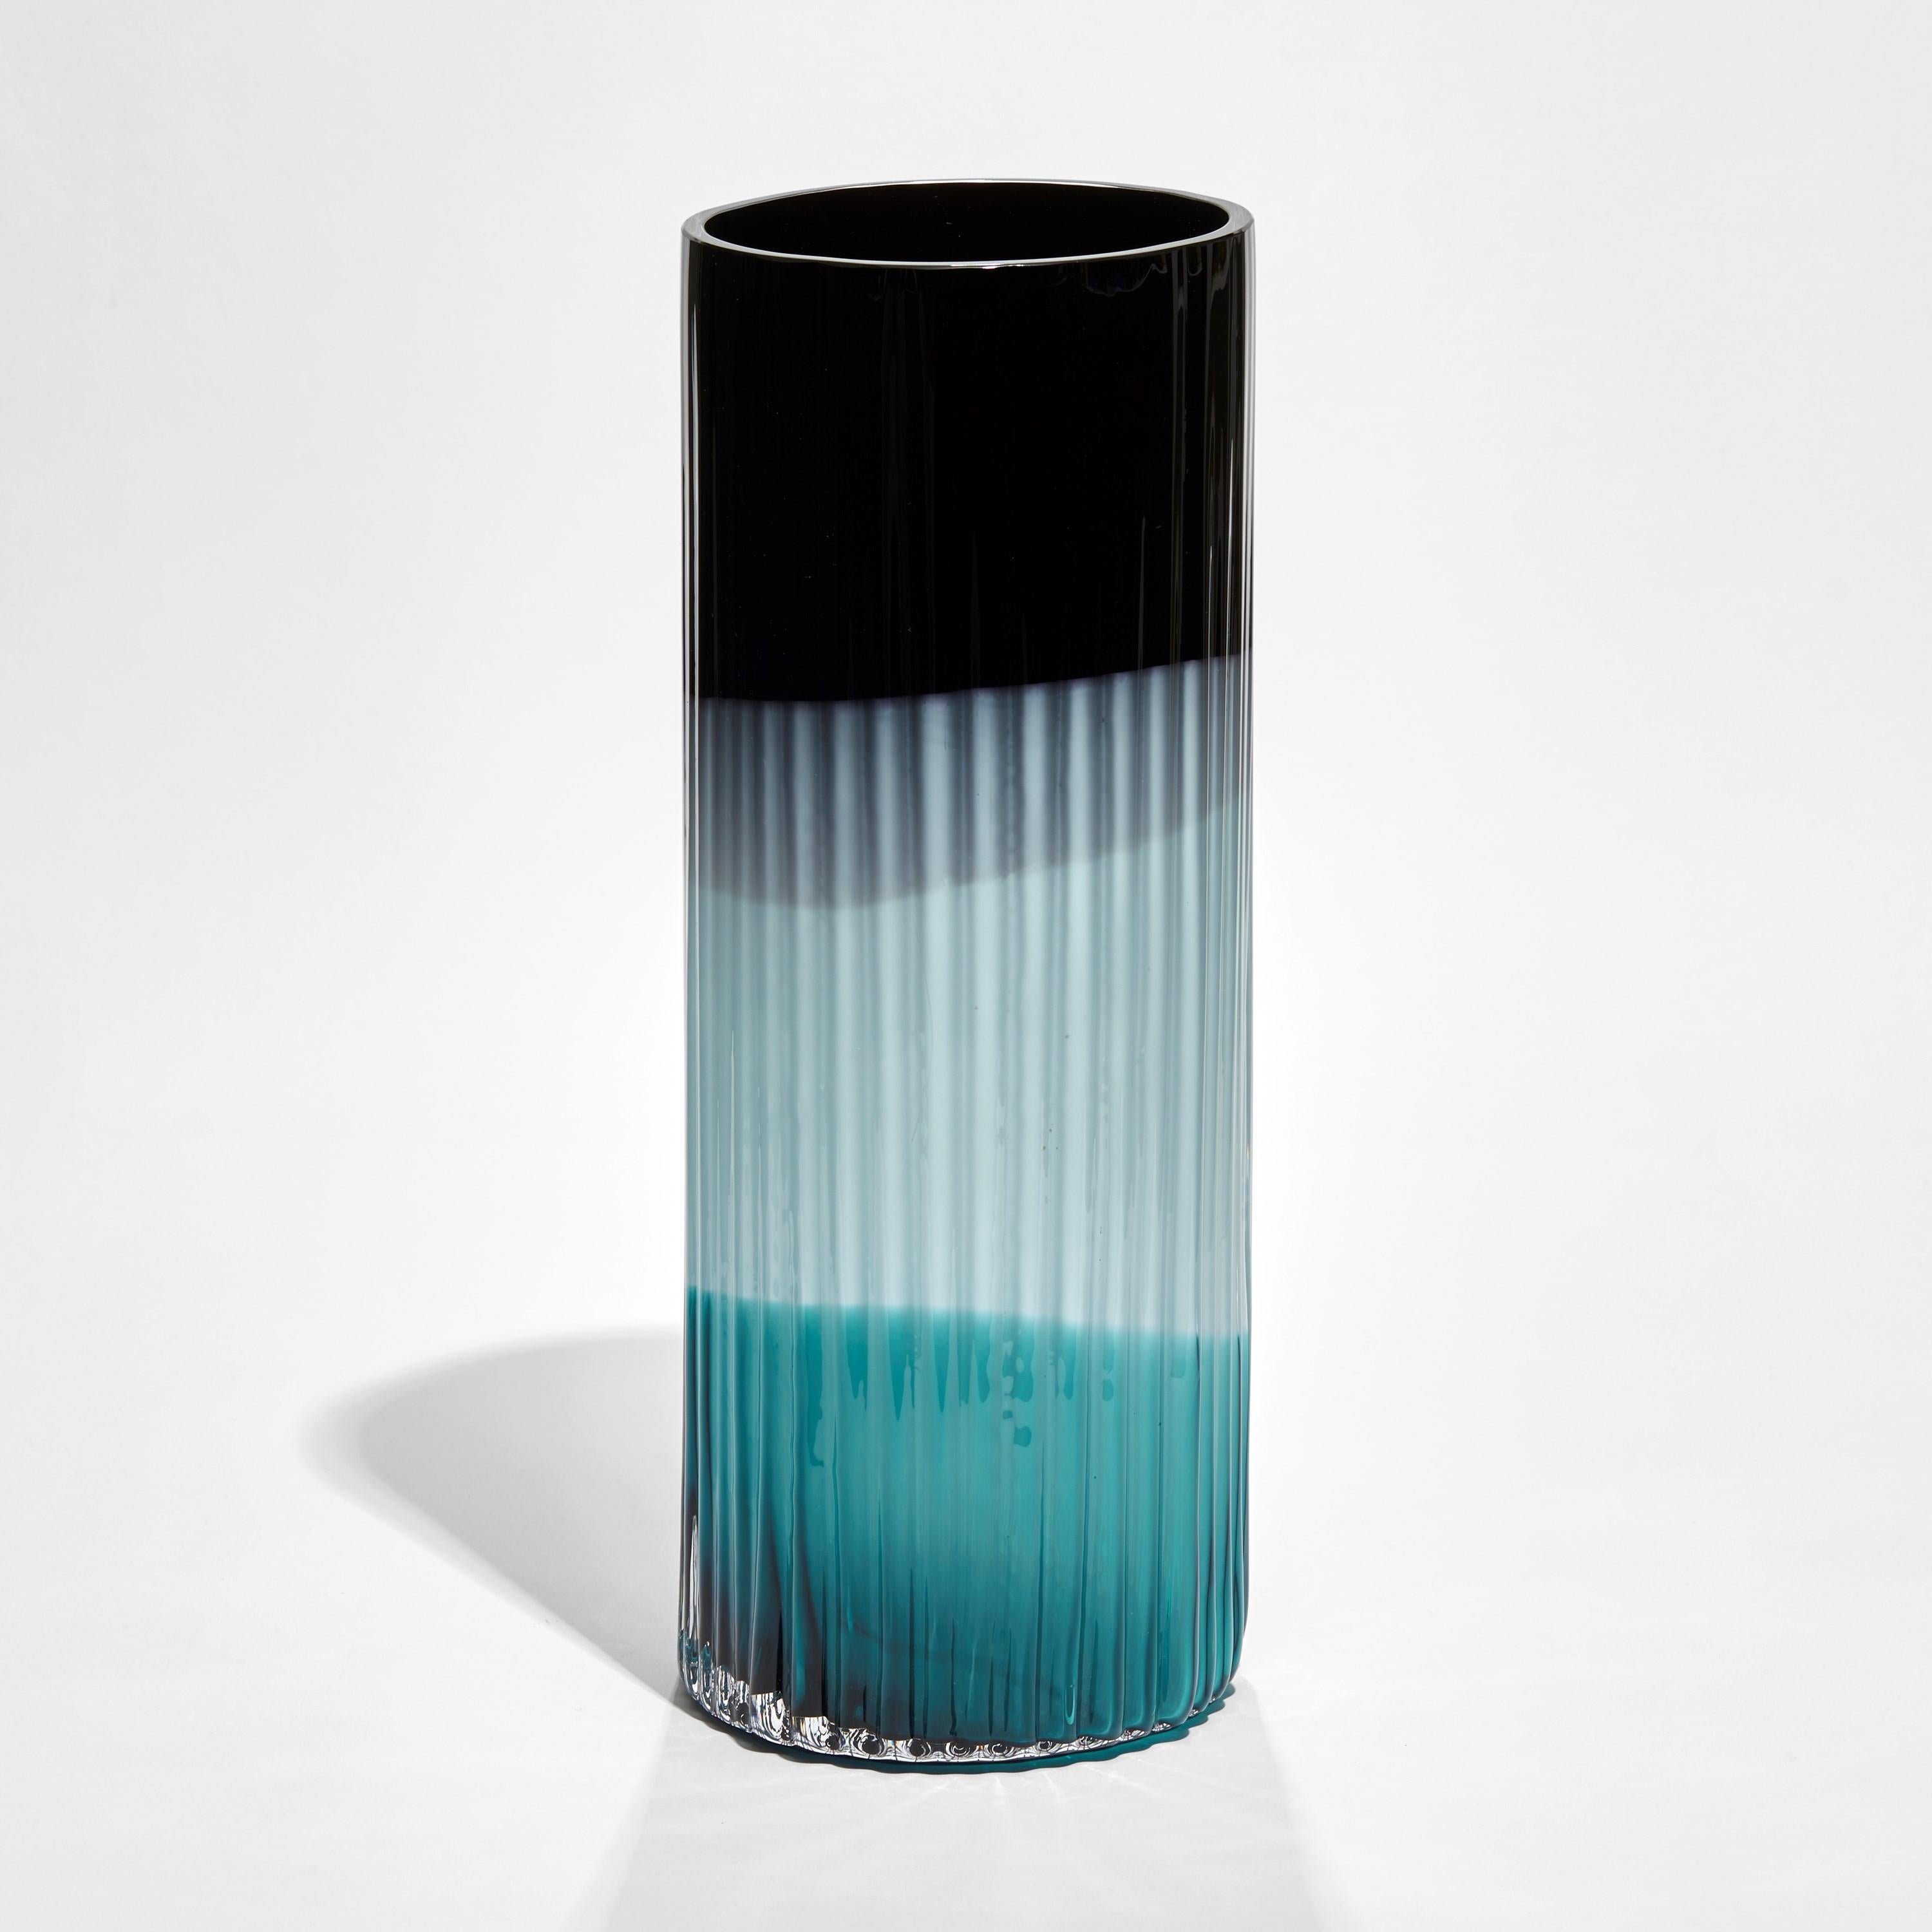 Le vase Plissé en noir, turquoise et bleu clair est un vase en édition limitée de l'artiste et designer suédoise Lena Bergström.

Créée à l'occasion de 